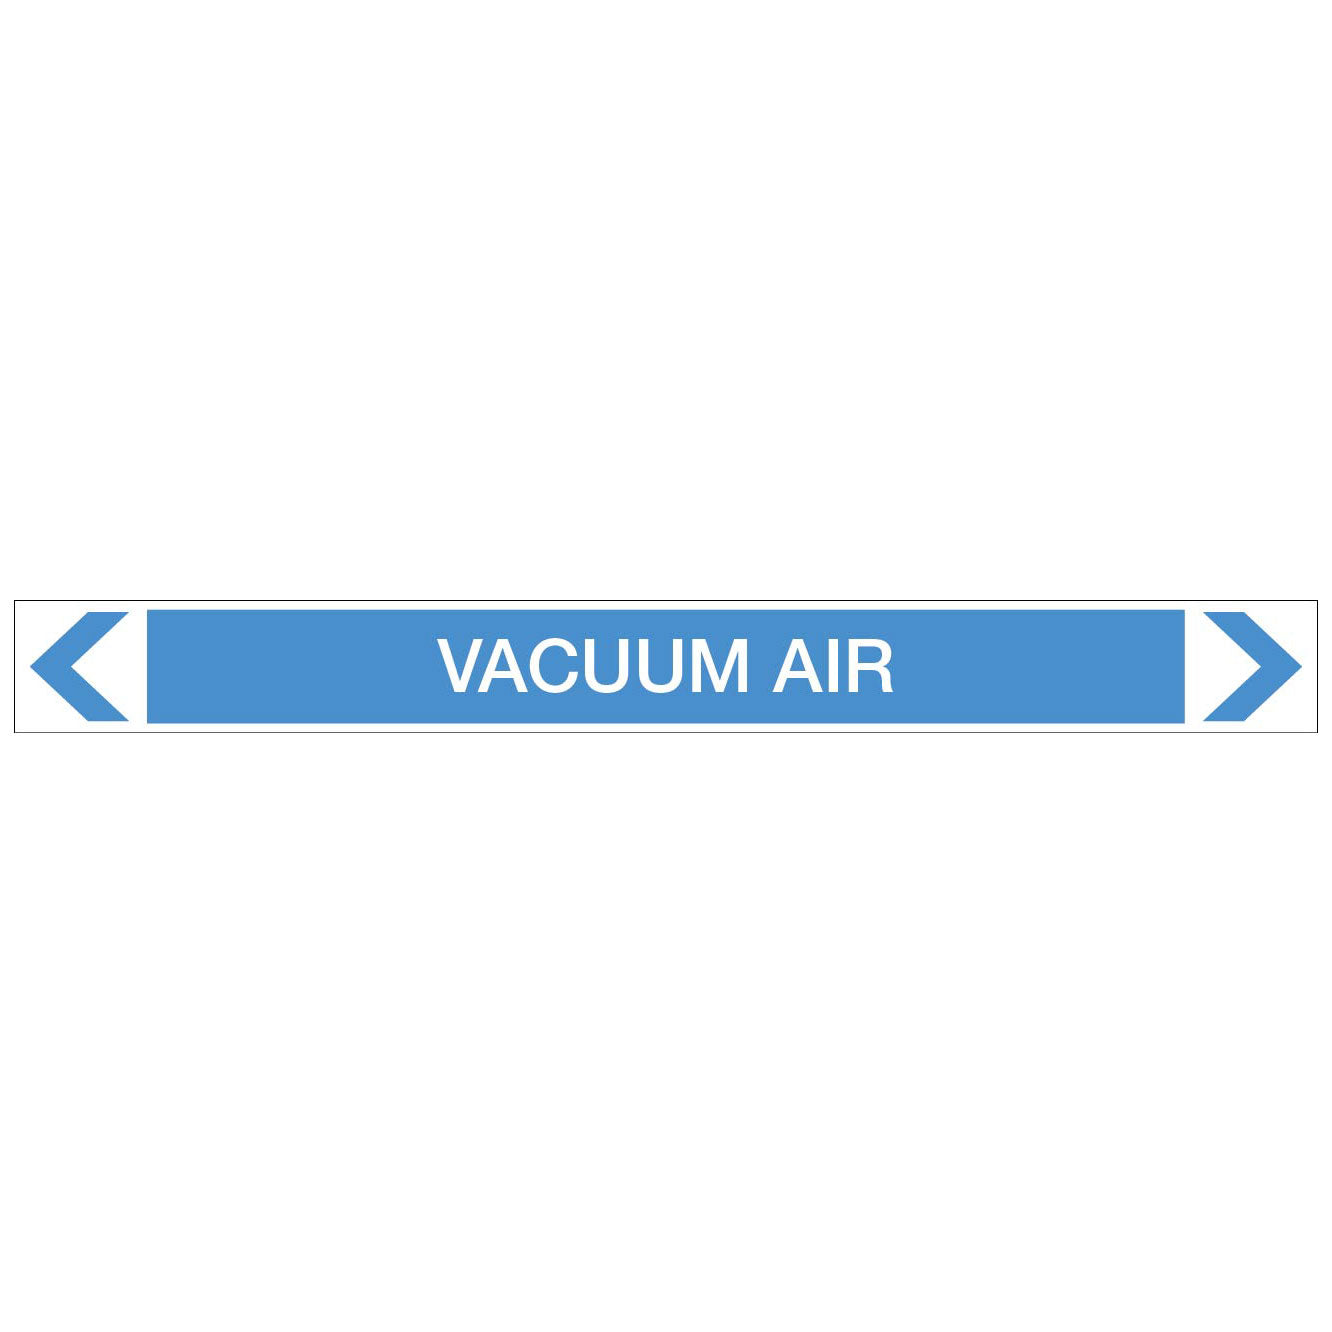 Air - Vacuum Air - Pipe Marker Sticker